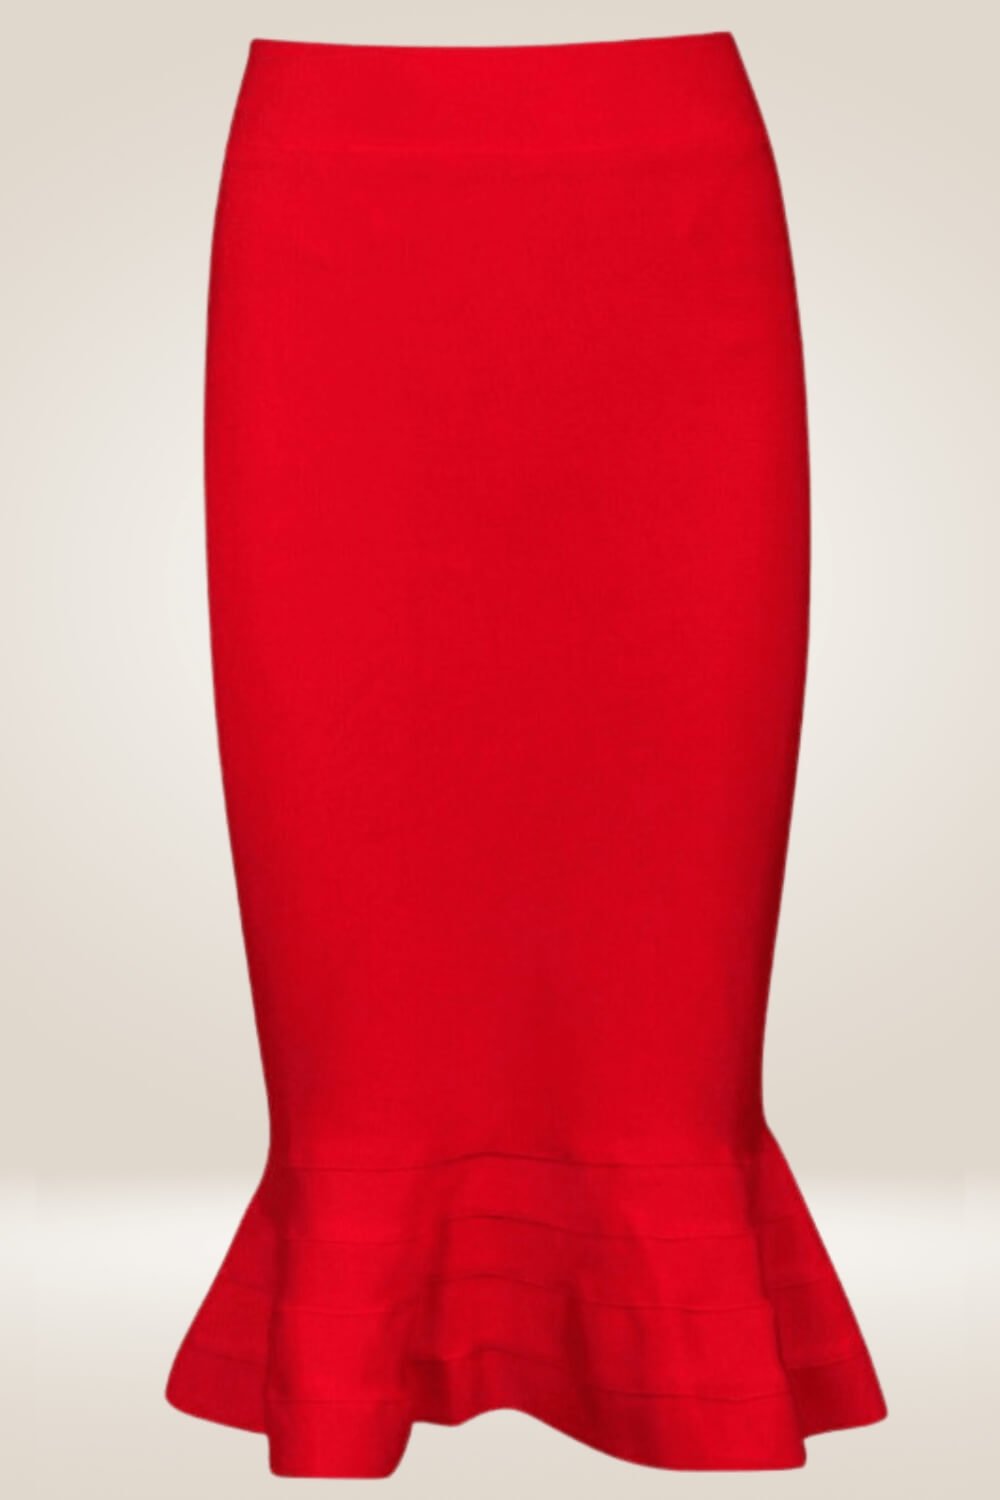 Bodycon Mermaid Red Midi Skirt - TGC Boutique - Bodycon skirt